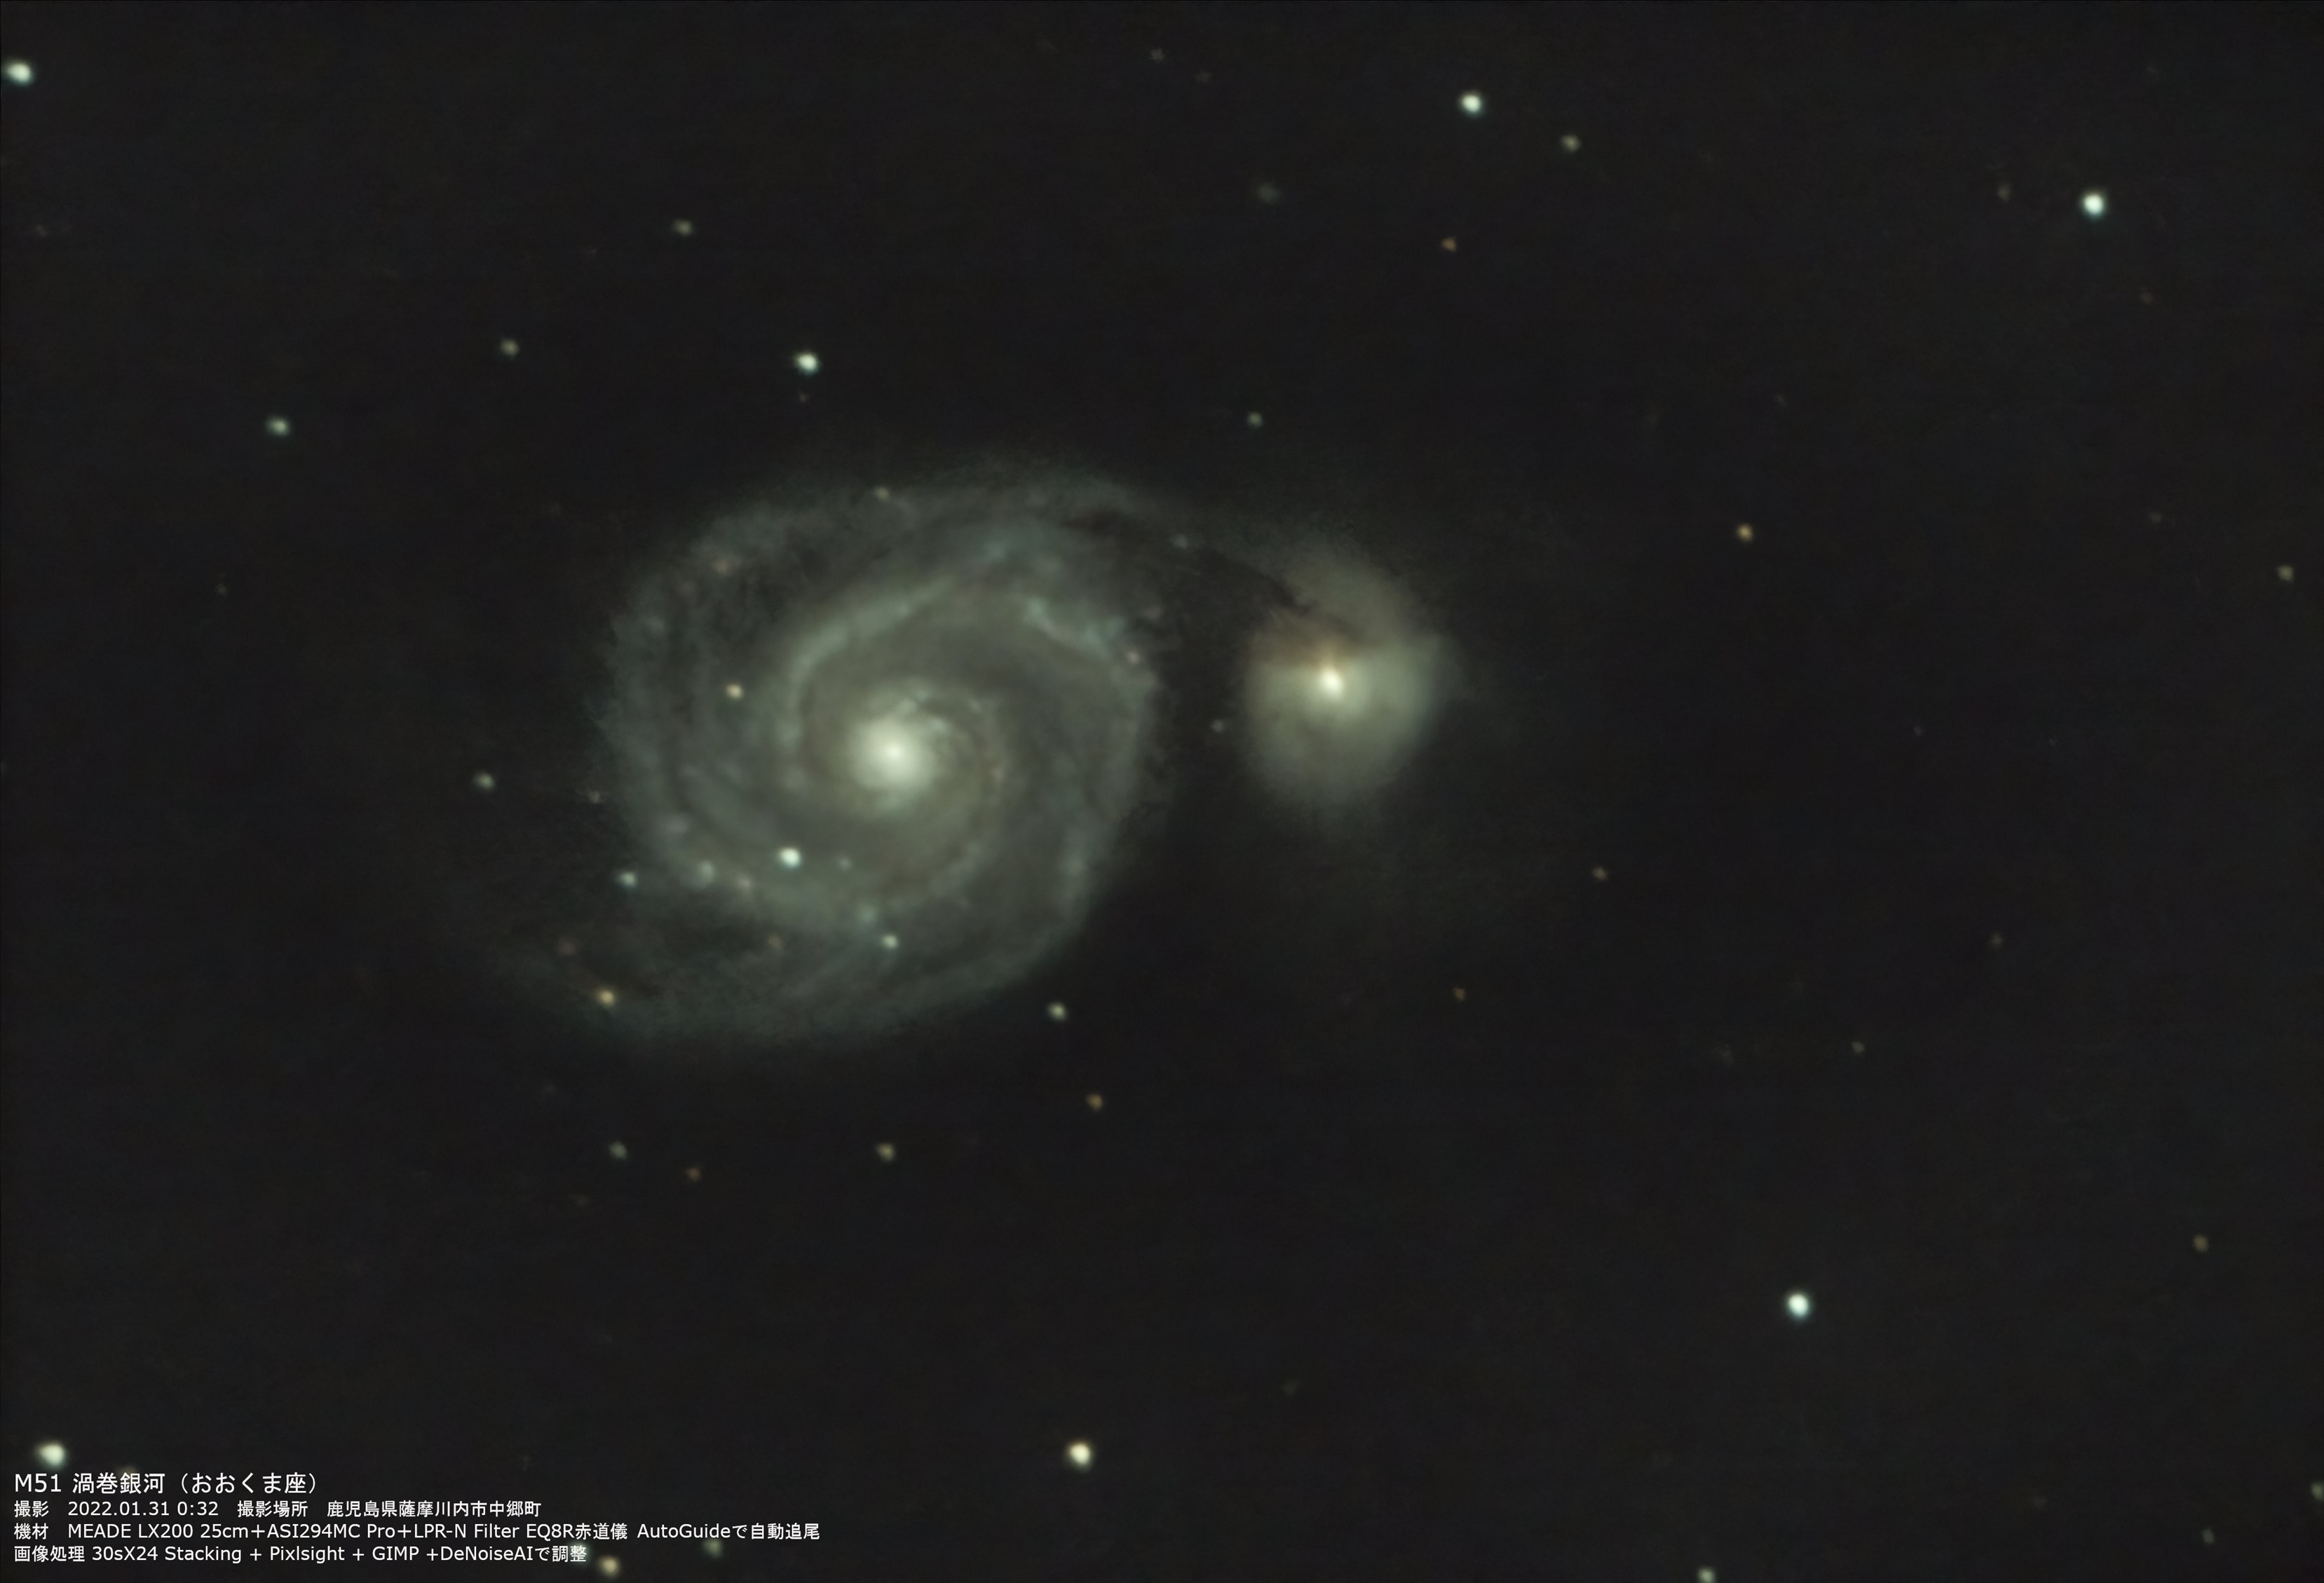 『M51 渦巻銀河』(2022年1月31日)